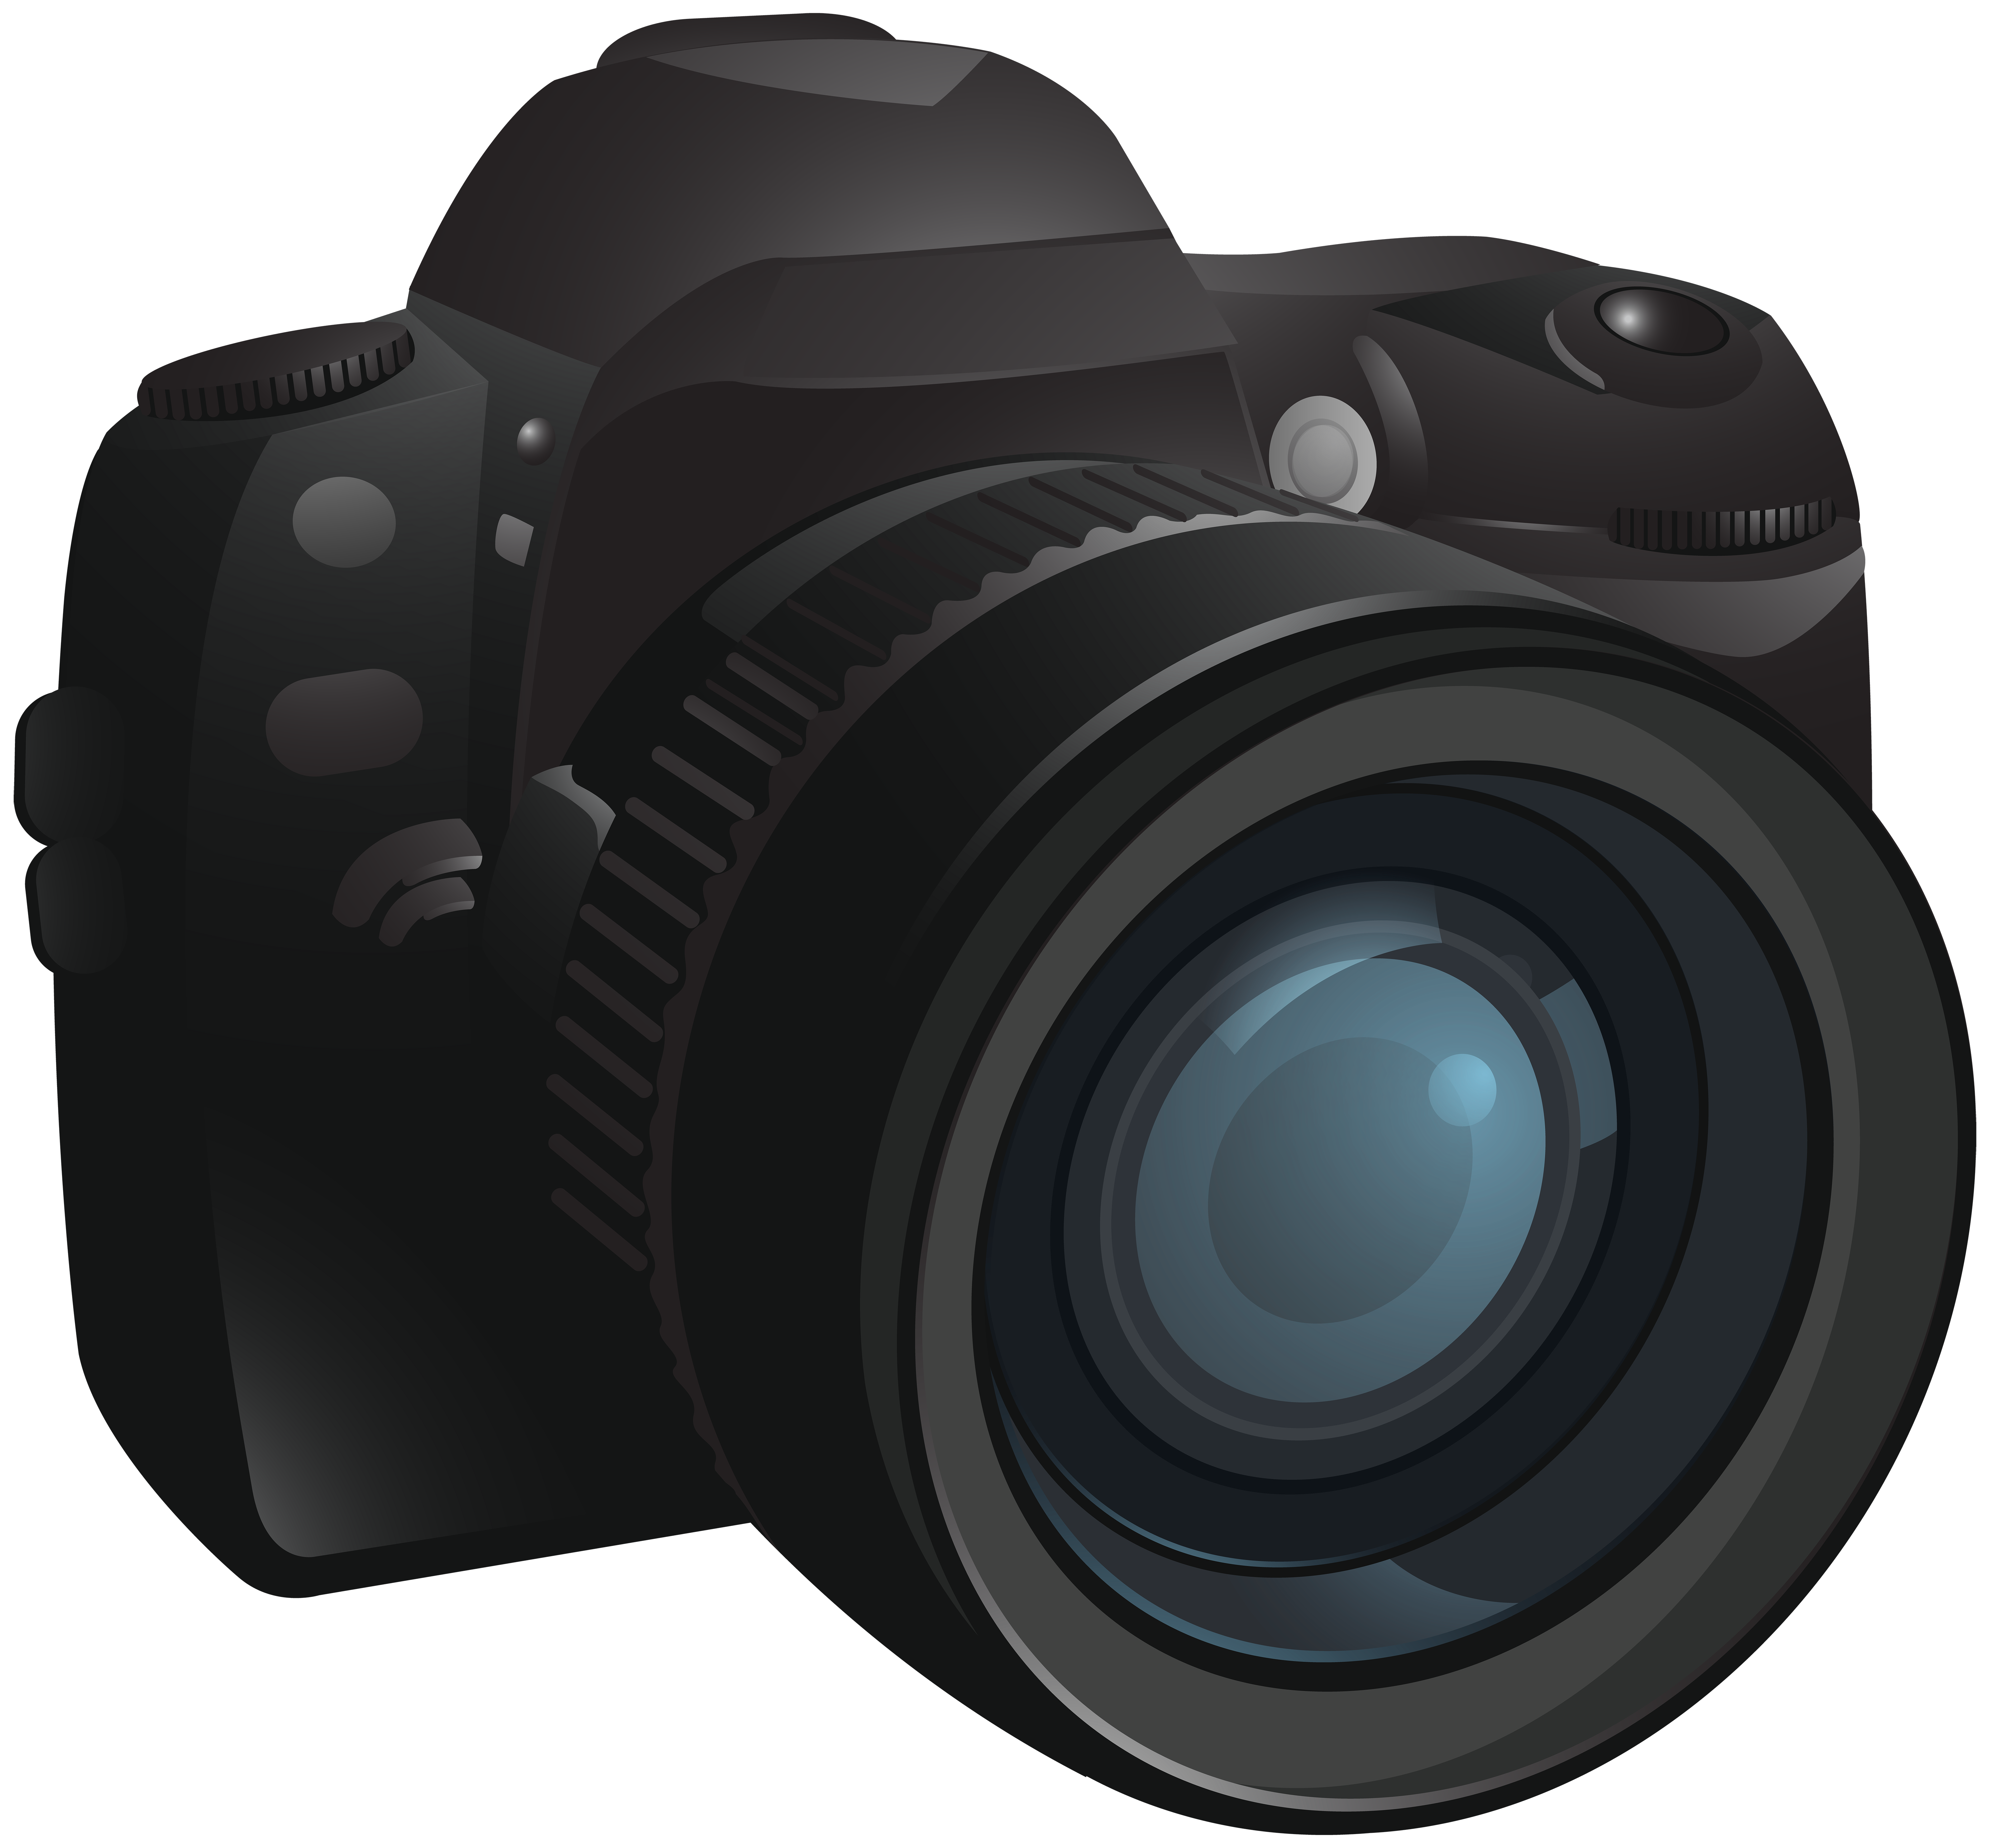 Digital Slr Camera Camera Transparent Png Image Png Download 6000